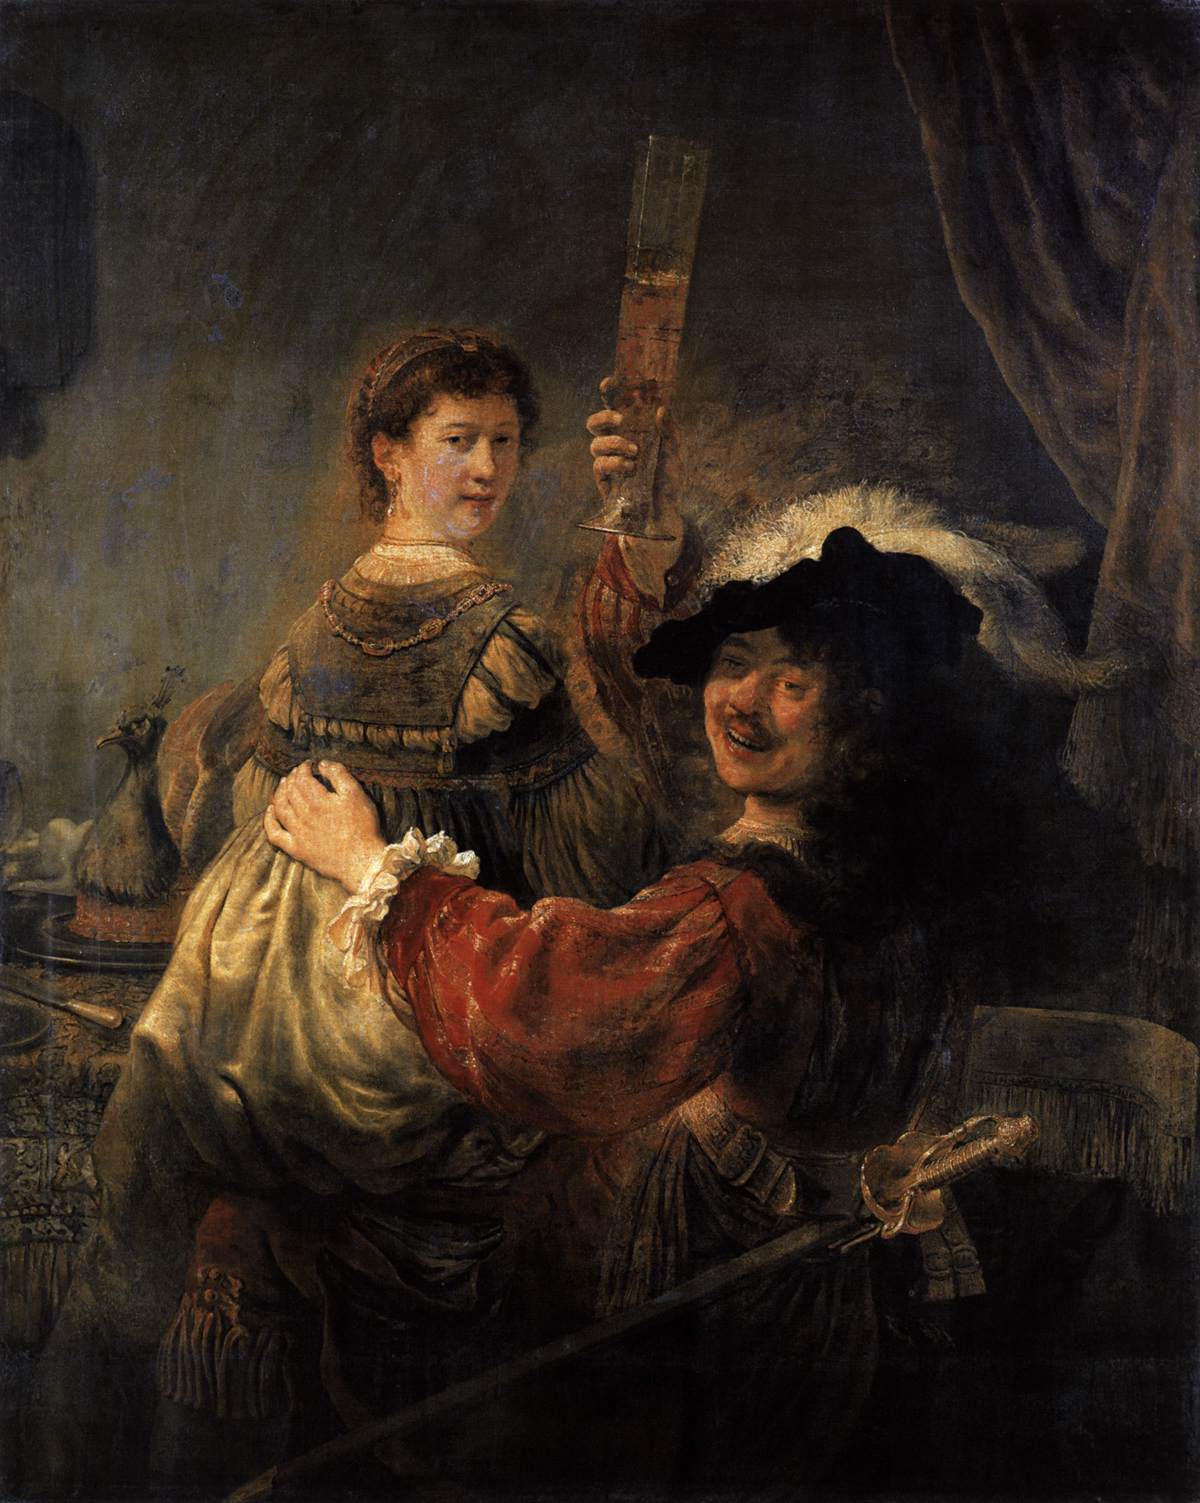 Rembrandt e Saskia em A Cena do Filho Pródigo na Taverna